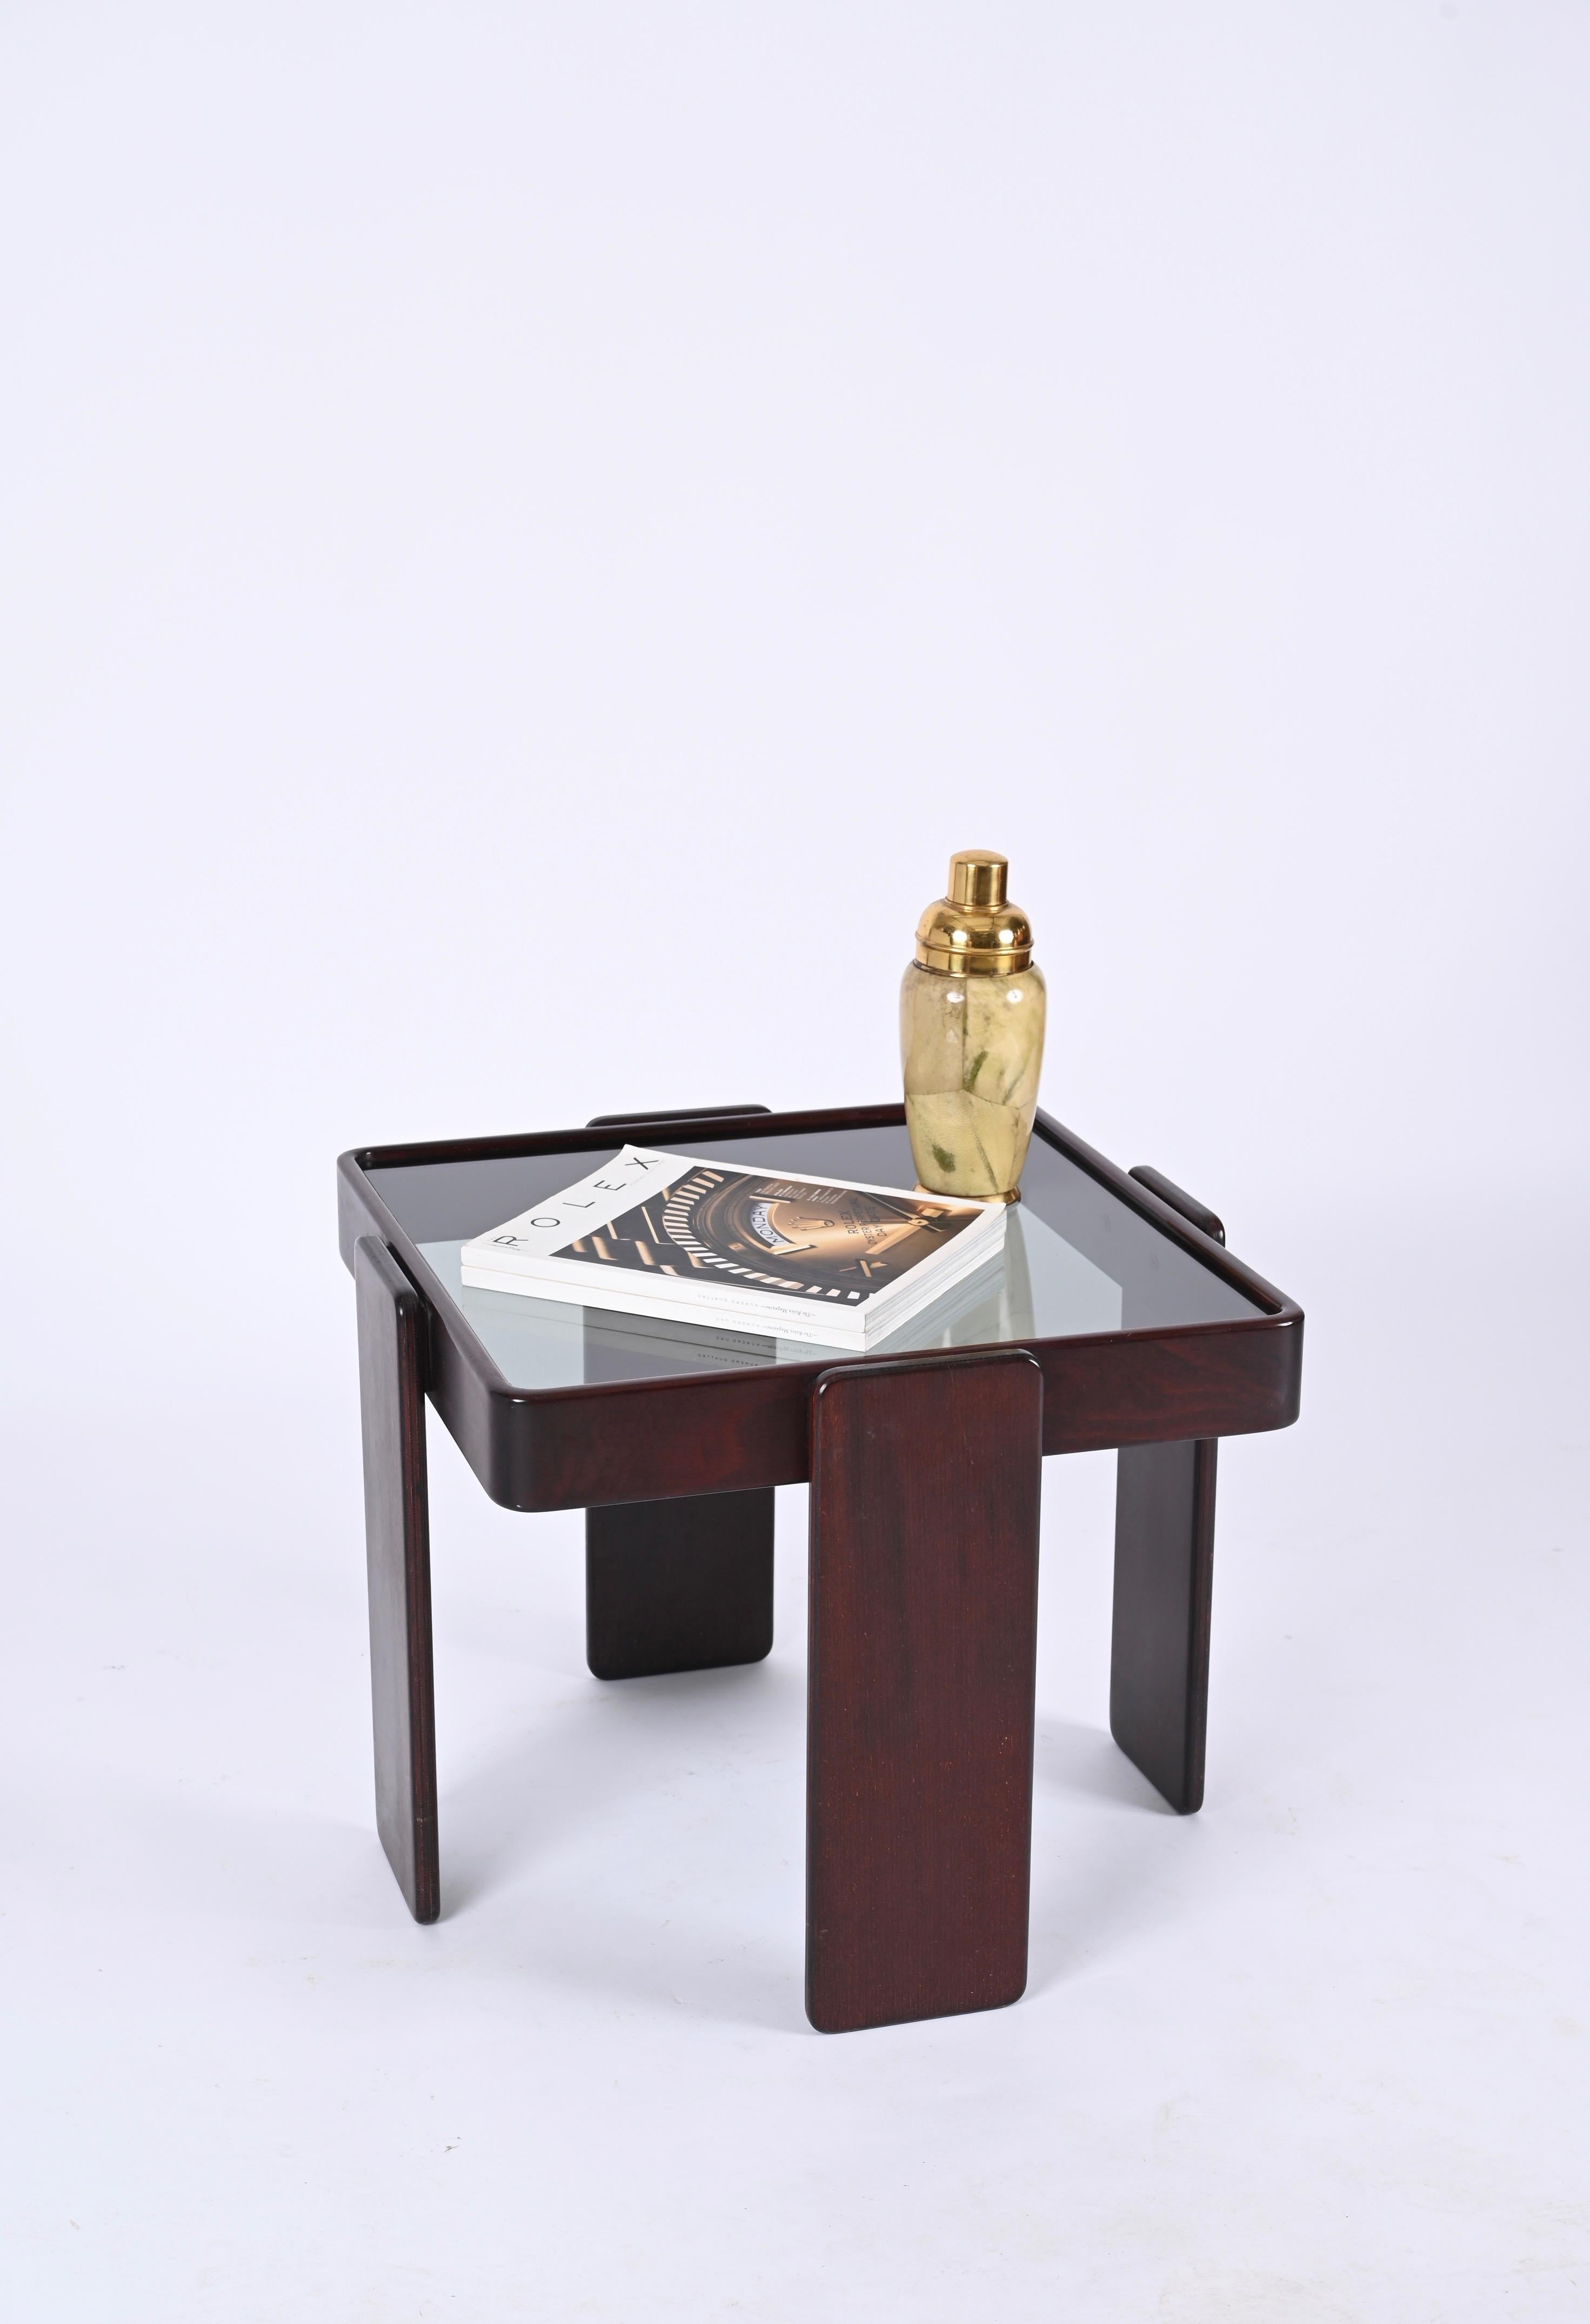 Superbe table basse en bois carré de style midcentury avec plateau en verre fumé. Conçu par Gianfranco Frattini et produit par Cassina dans les années 1970 en Italie.

Cette table basse iconique présente une structure minimale avec un magnifique